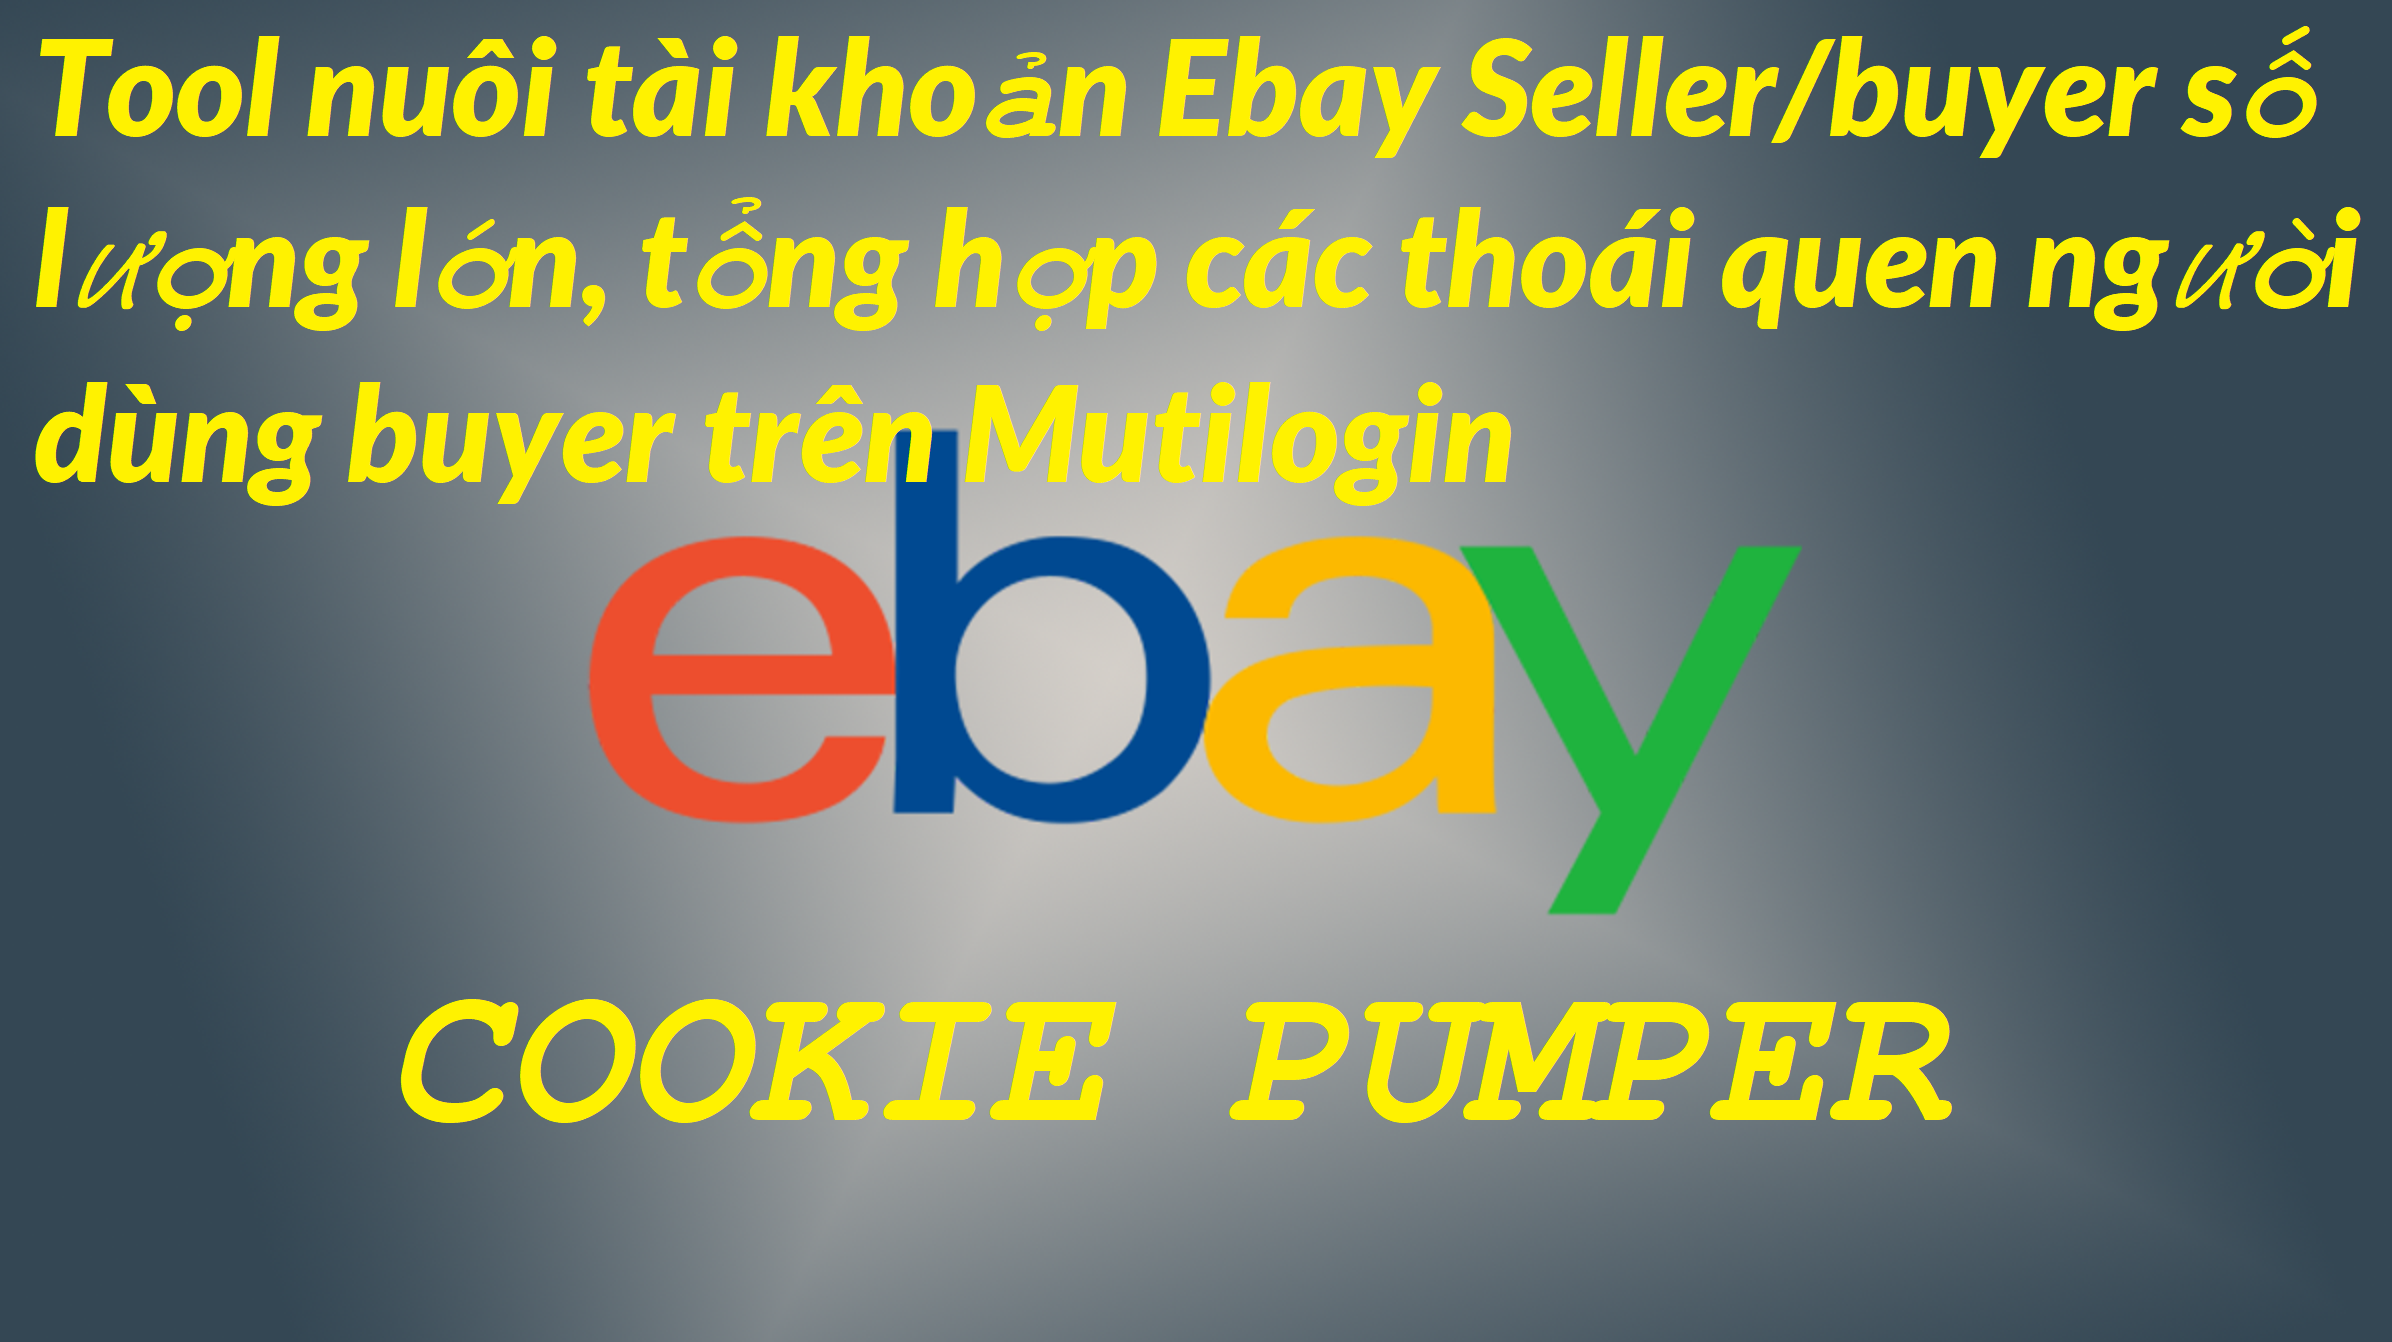 eBay Cookie Pumper Như Người Thật, Nuôi Số Lượng Lớn Tài Khoản eBay Trên Mutilogin, Gologin, Gologin Crack Offline, Windows,…